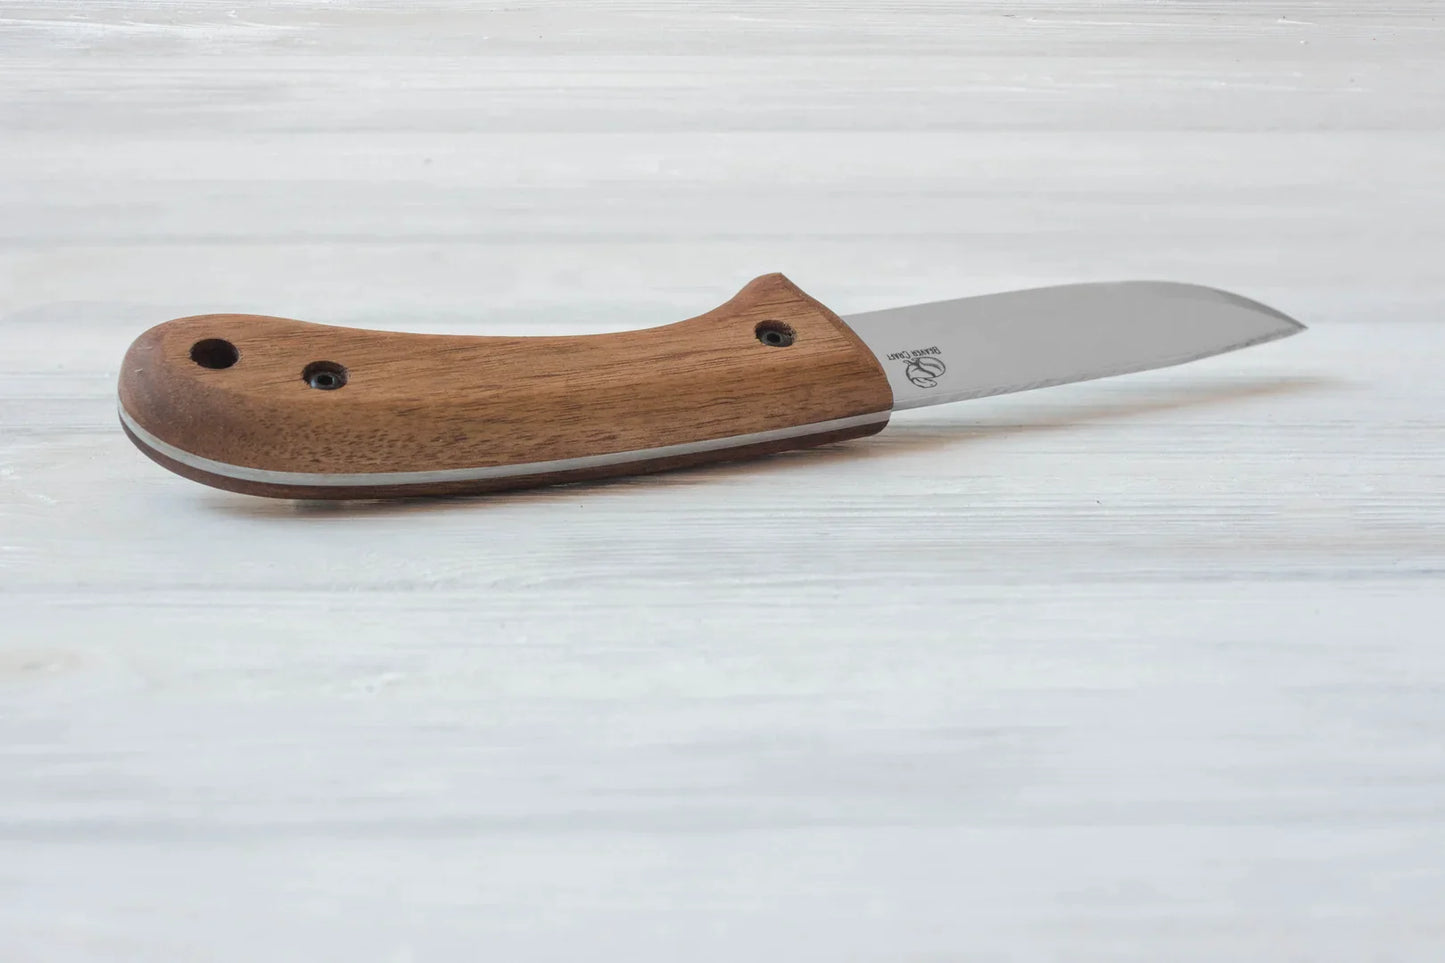 BSH2 Carbon Steel Bushcraft Knife Walnut Handle with Leather Sheath